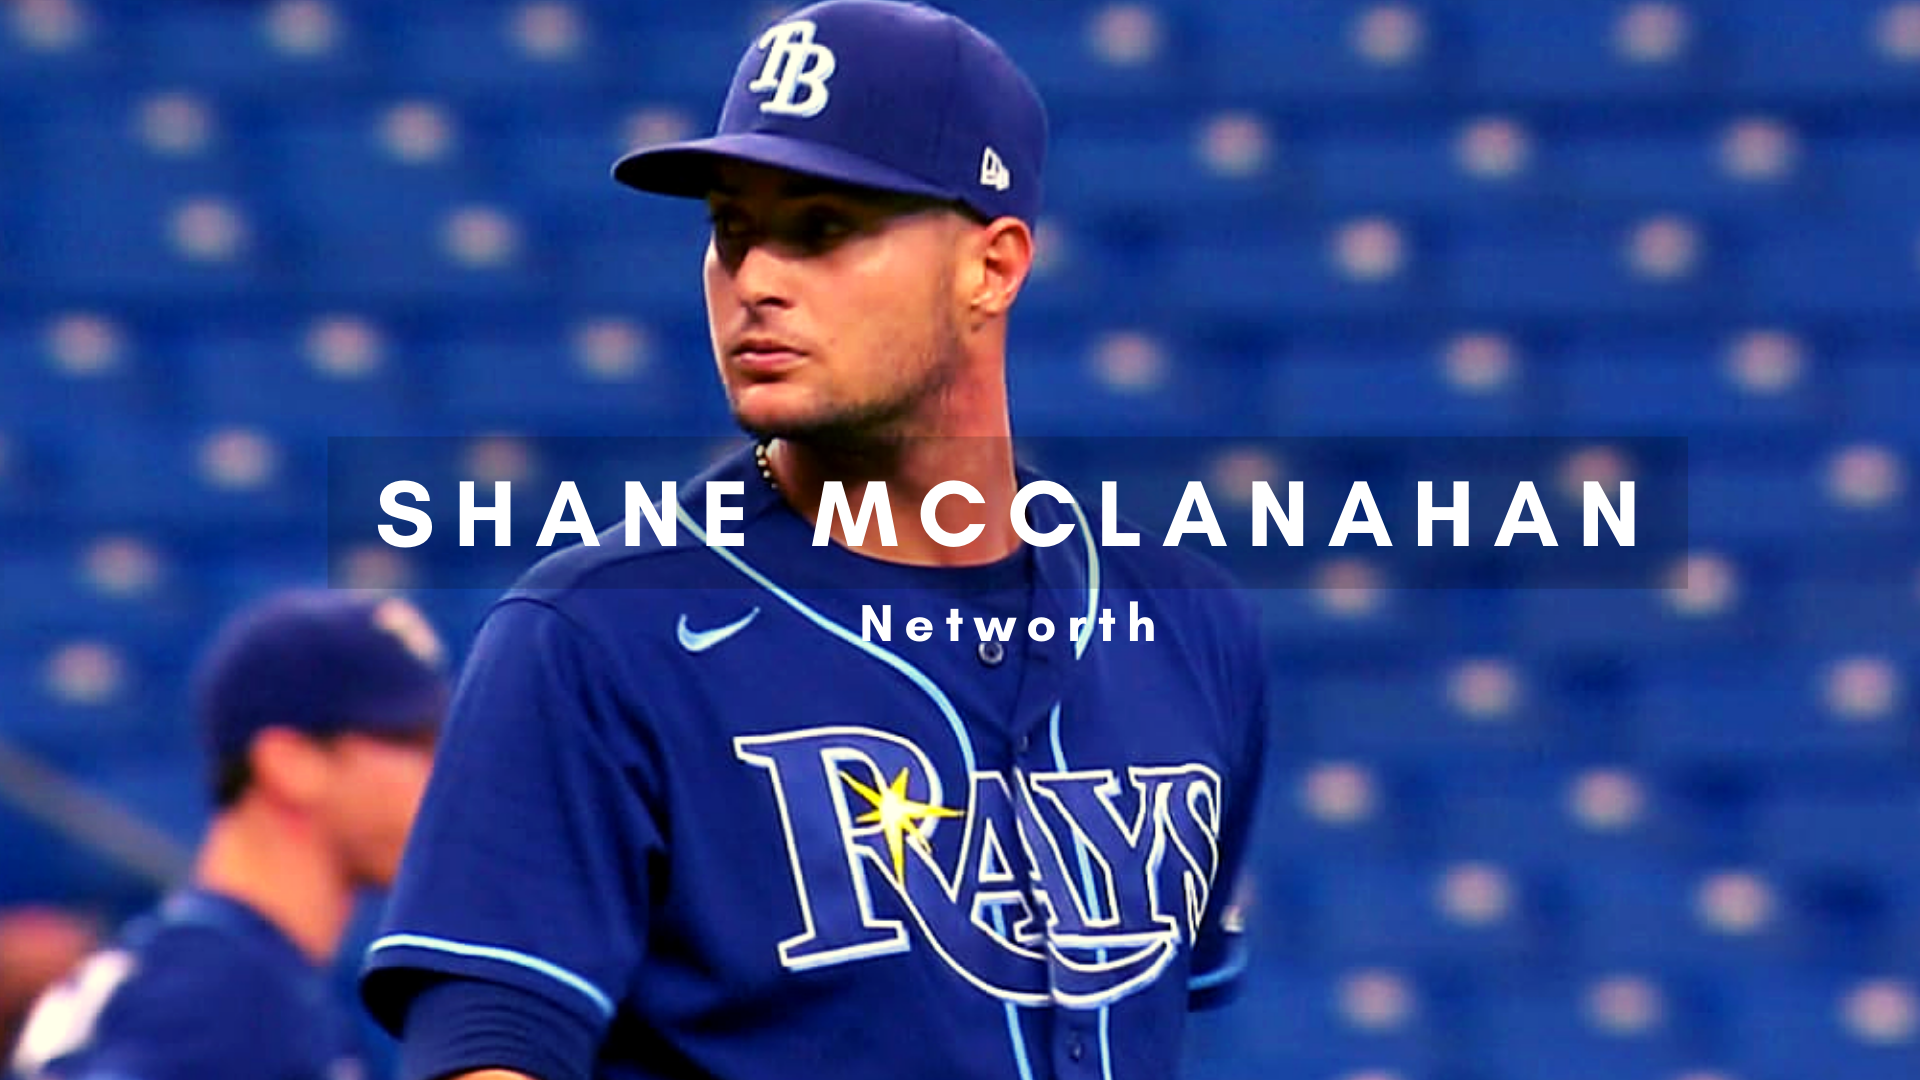 Shane McClanahan